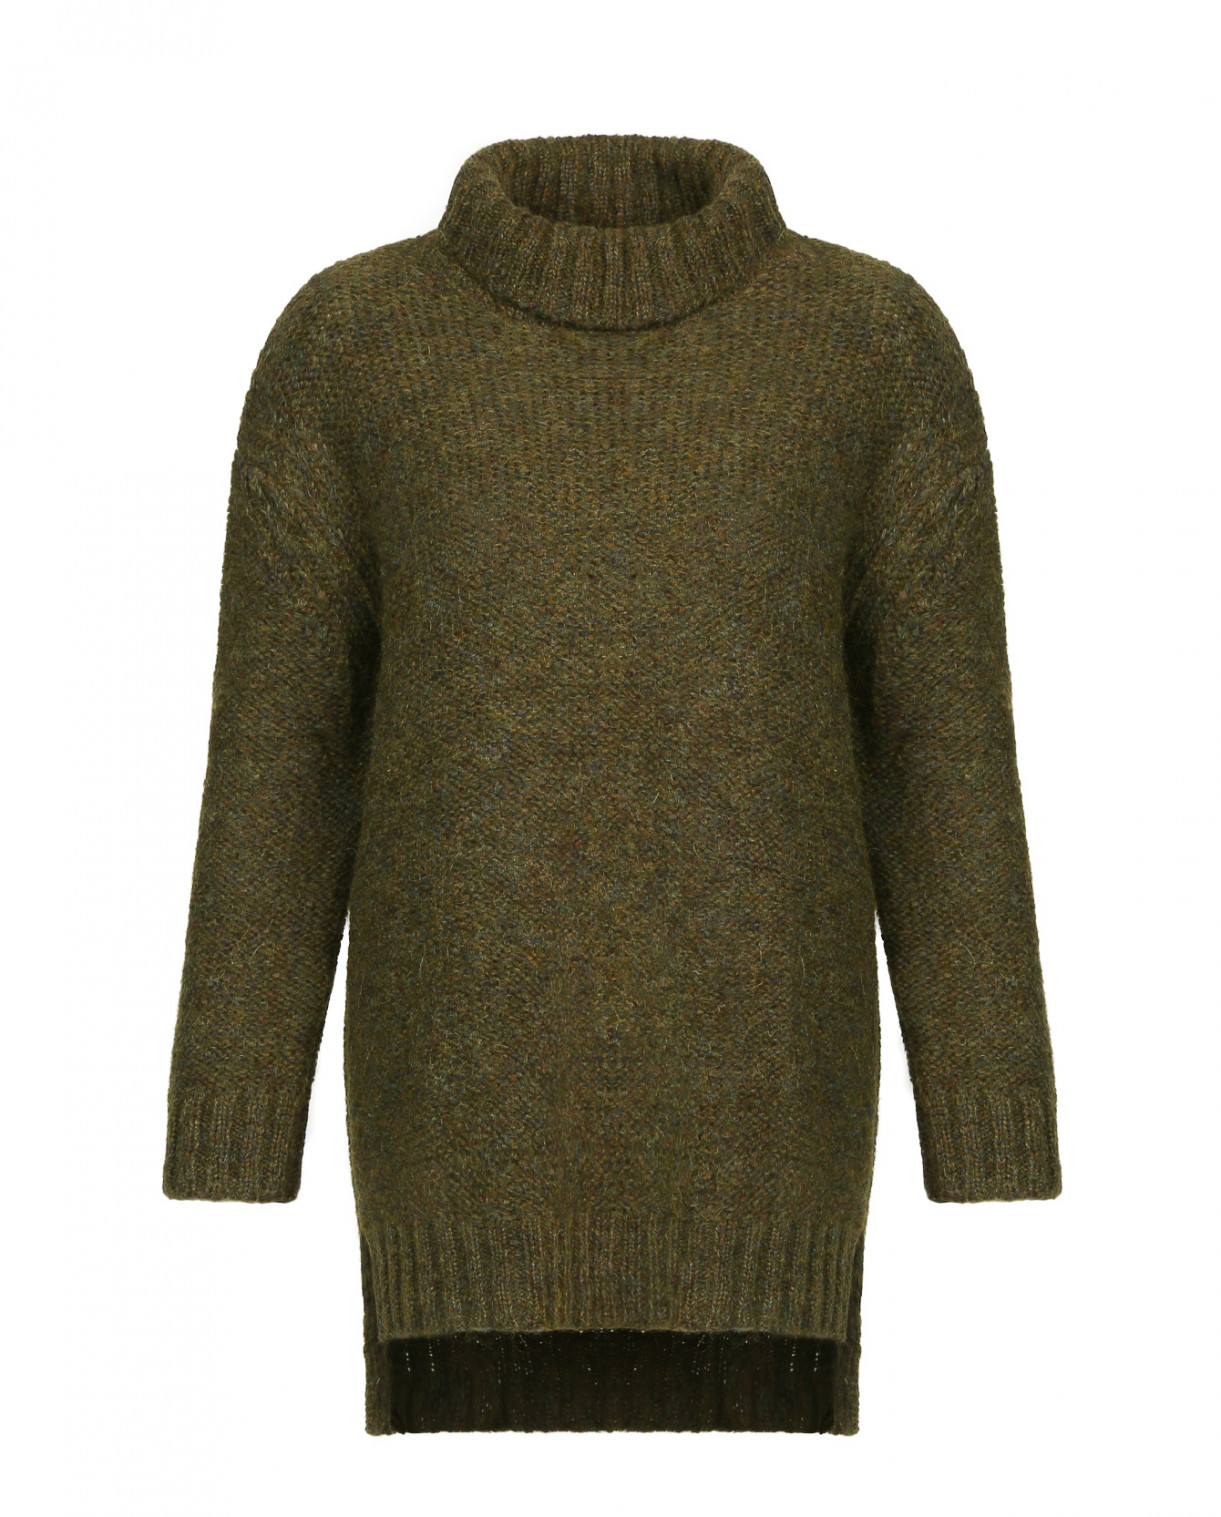 Удлиненный свитер с высокой горловиной R95TH  –  Общий вид  – Цвет:  Зеленый